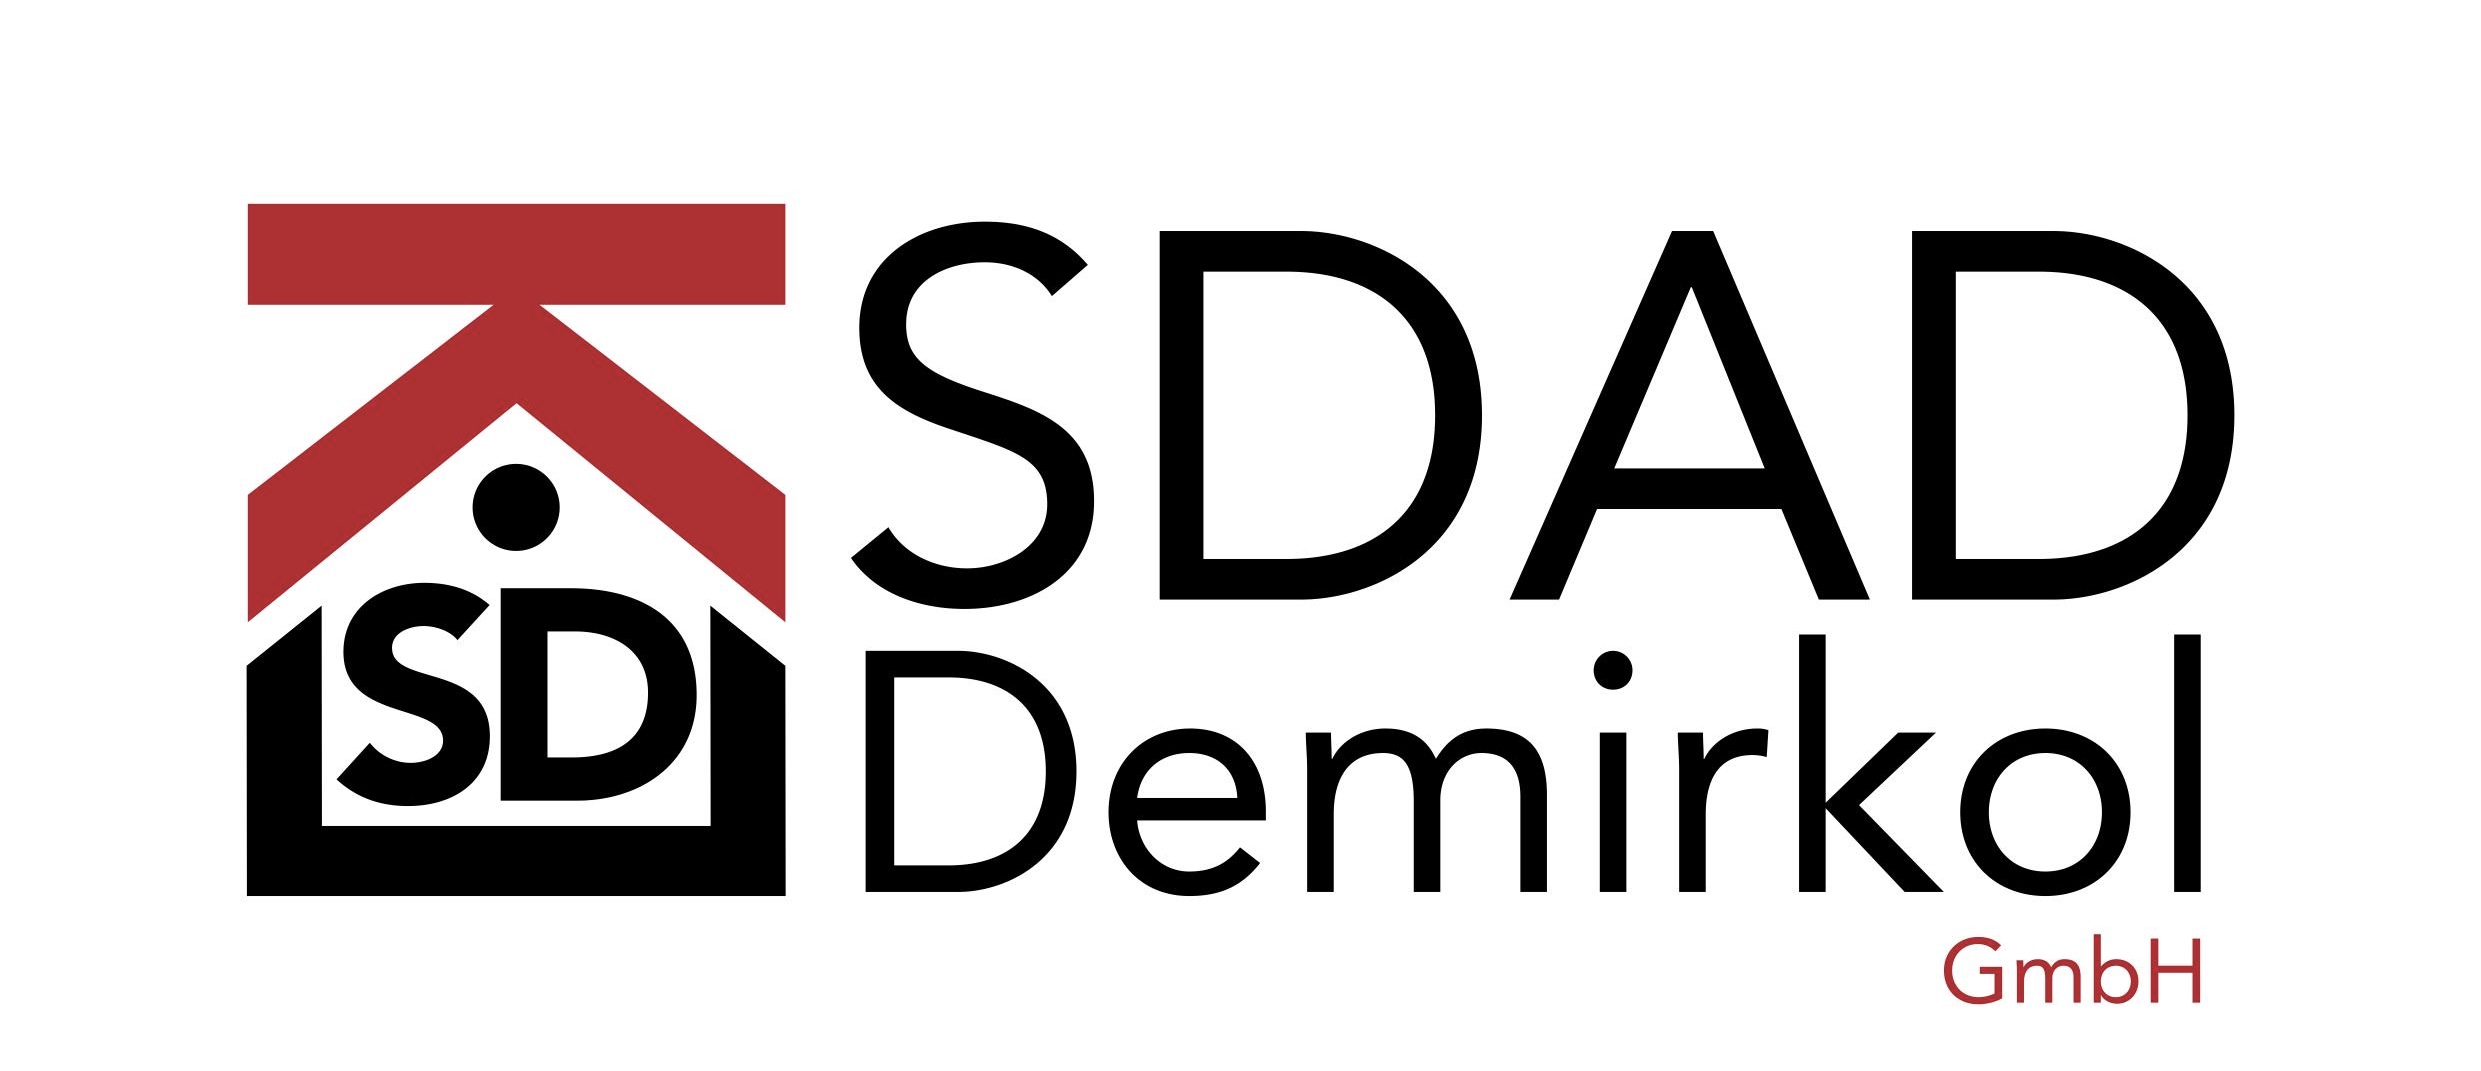 SDAD Demirkol GmbH